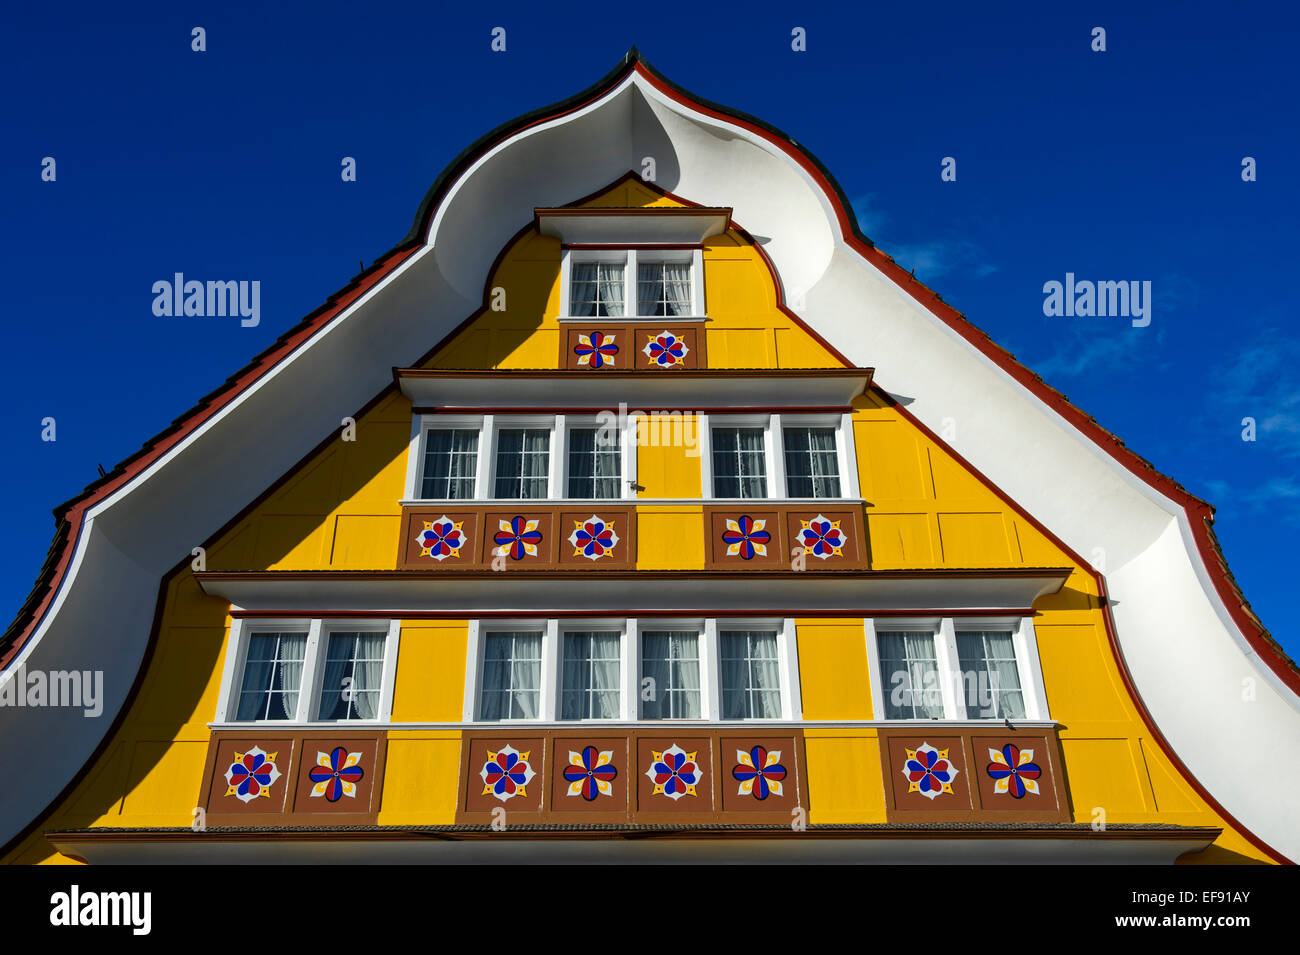 Fassade eines Wohnhauses mit gewölbten Pediment im Appenzeller Stil, Appenzell, Kanton Appenzell, Schweiz Stockfoto